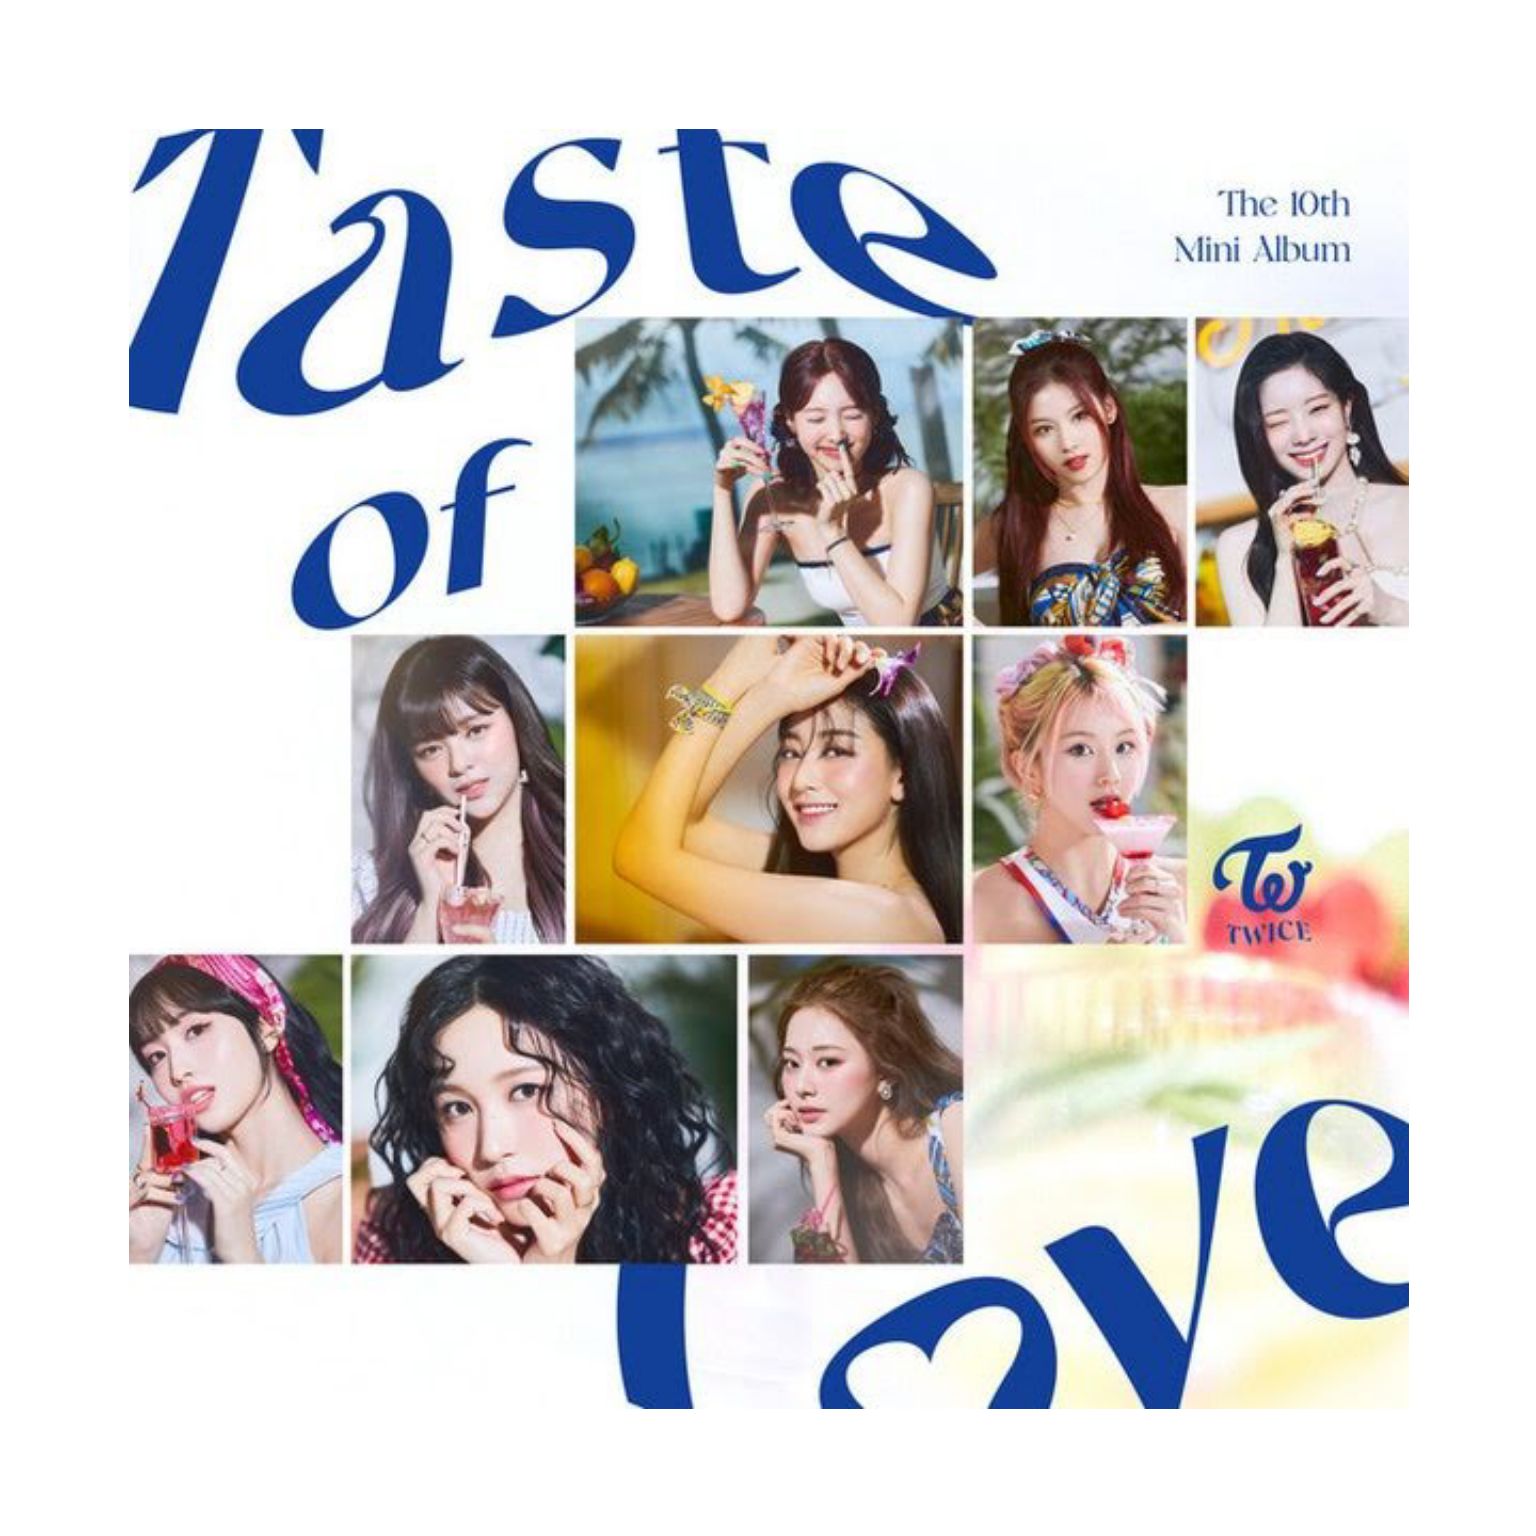 Taste of Love by TWICE